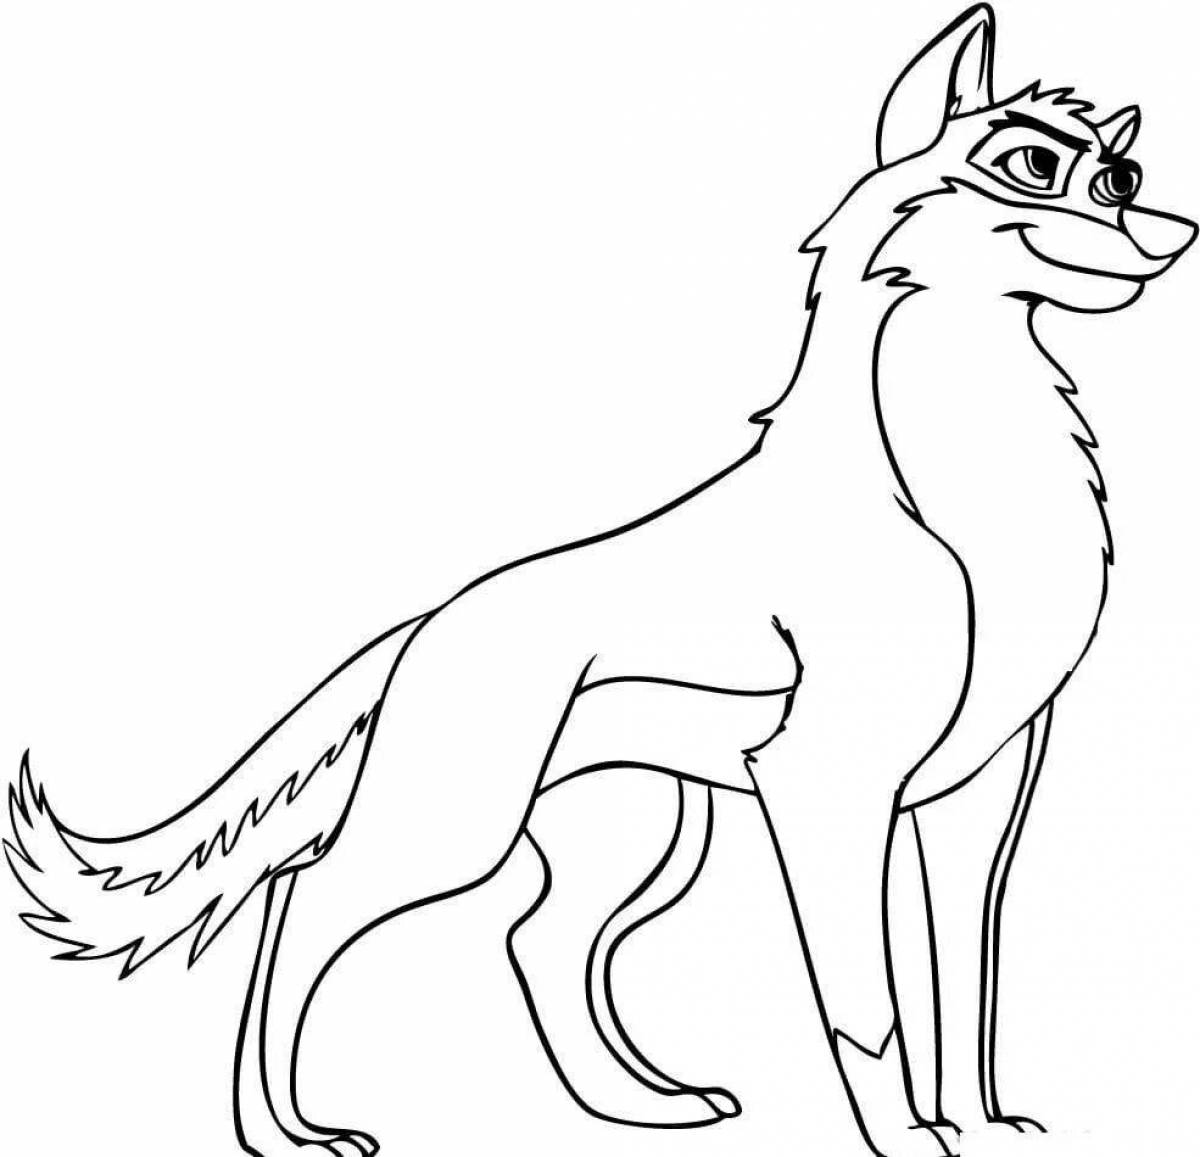 Фото Драматическая раскраска рисунок волка